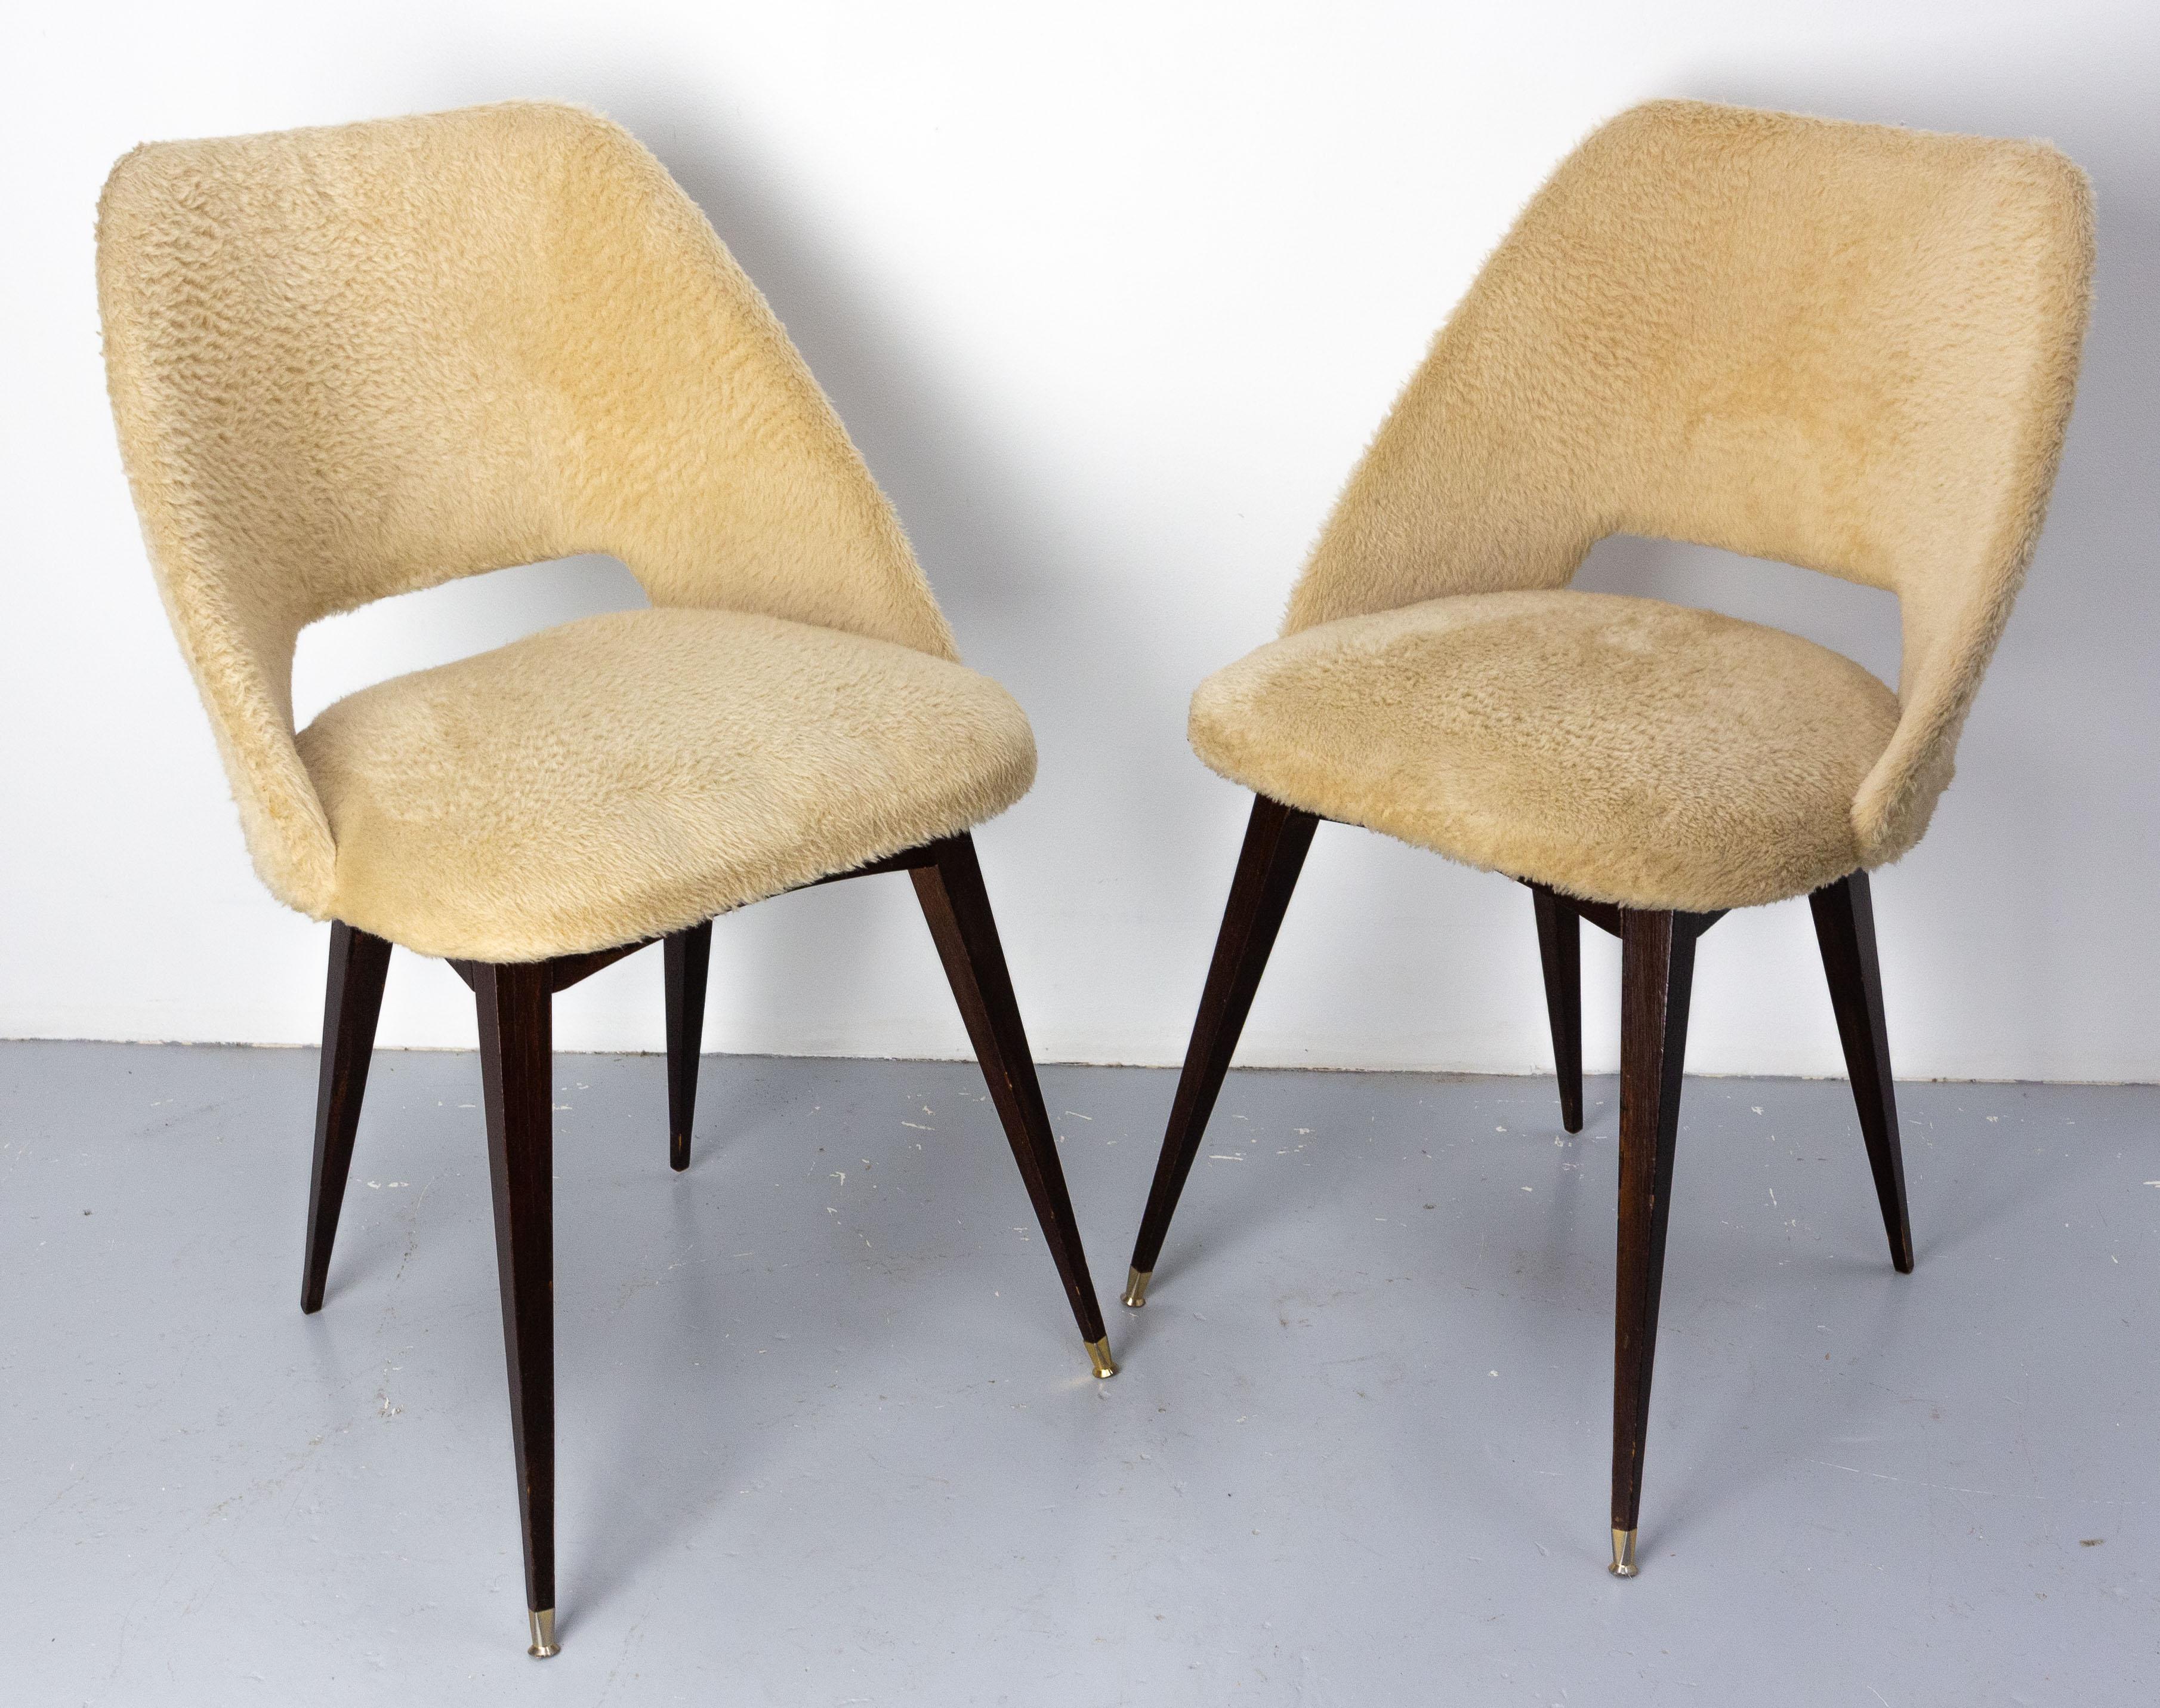 Zwei Vintage-Stühle,
Sehr typisch für die 1970er Jahre 
Der Stoff kann beibehalten oder nach Belieben verändert werden.
Guter Zustand

Versand:
P51 H86 / l 47 cm 8.4 Kg. Ein abgesessener Fuß.